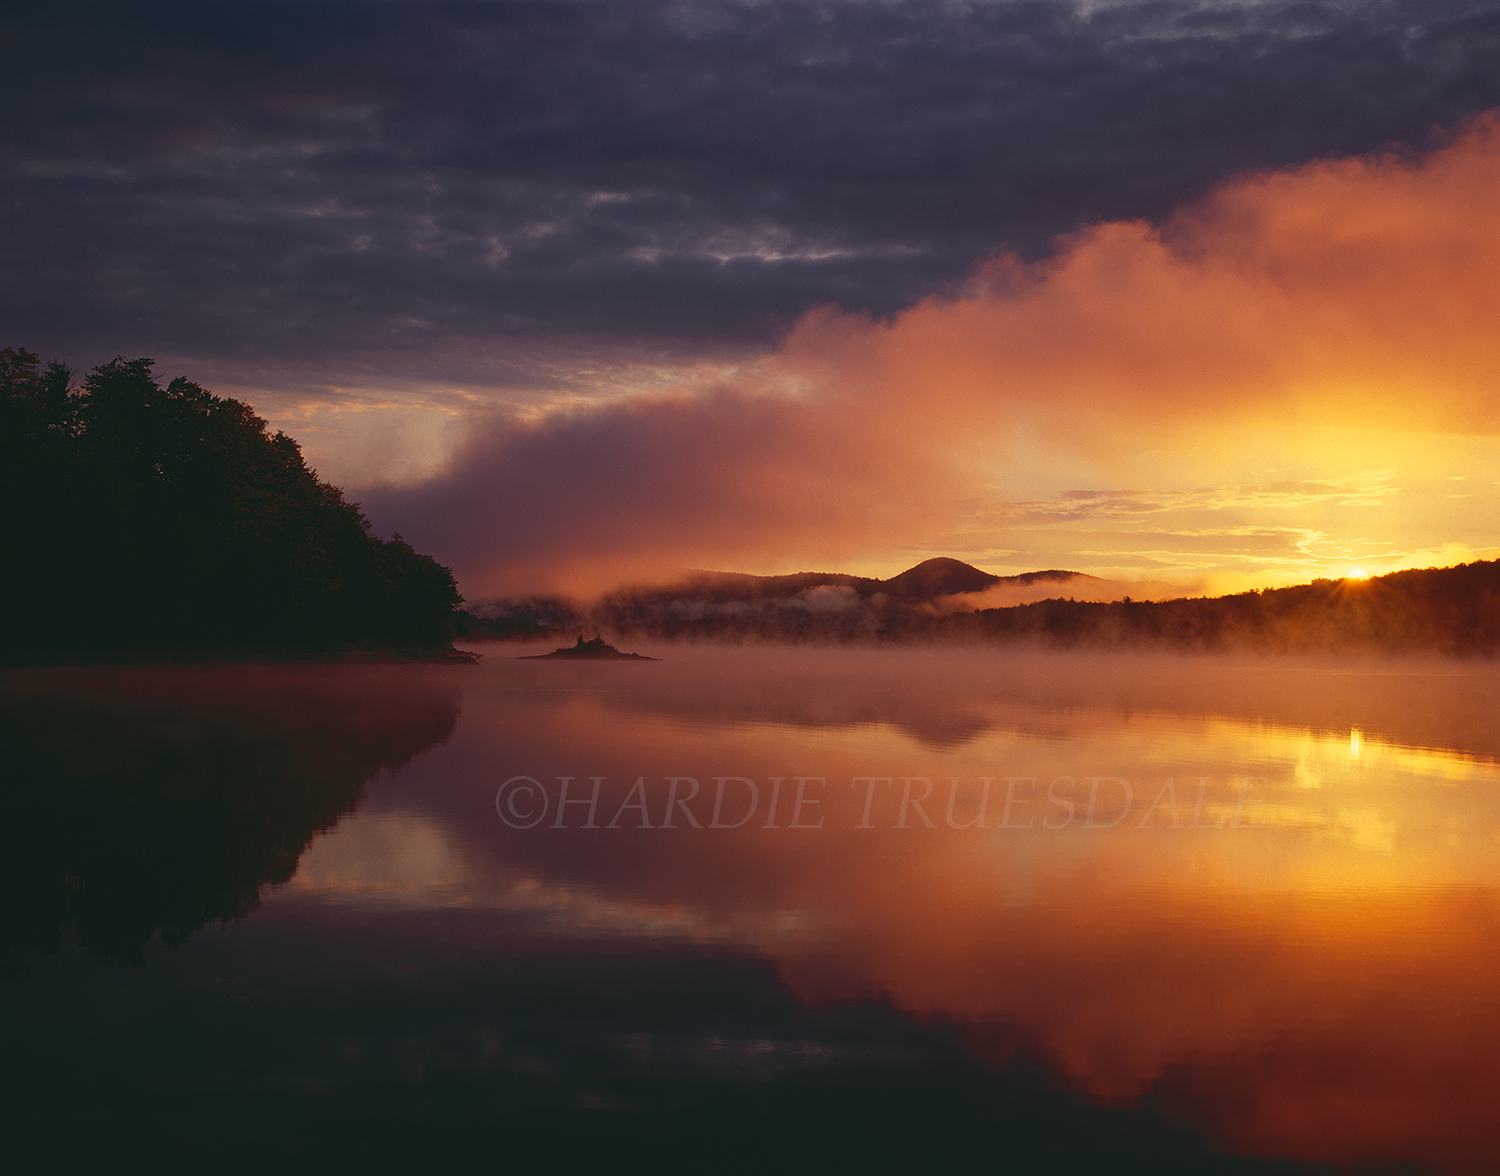  Adk#001 "Indian Lake Sunrise, Adirondack Preserve, NY" 